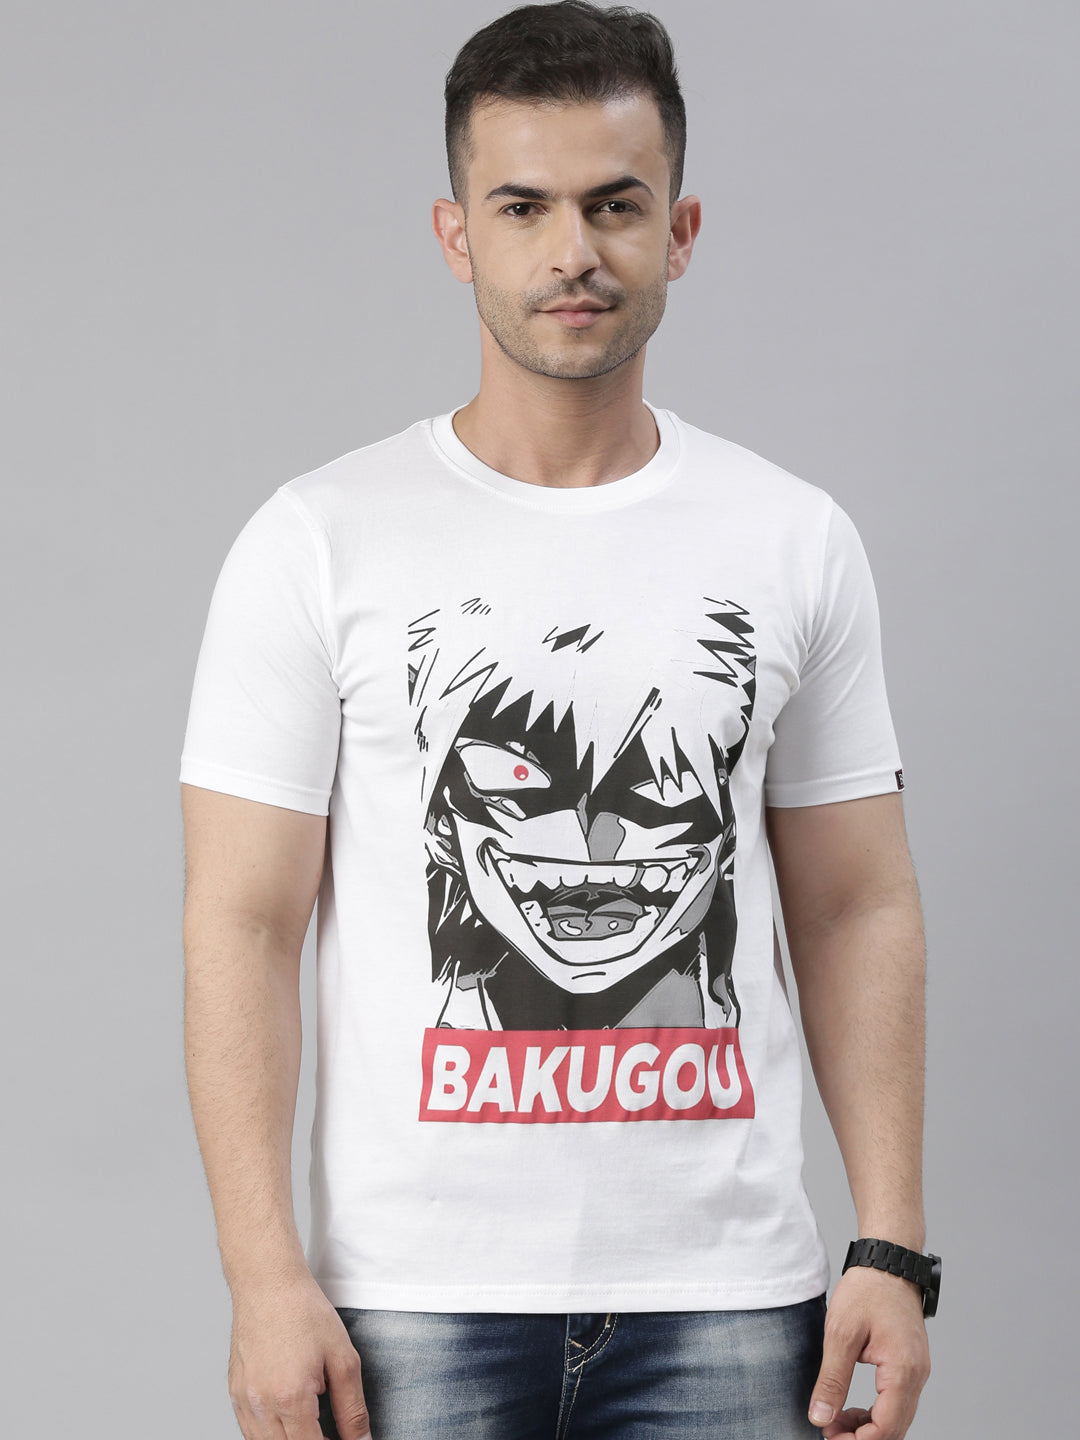 Bakugou - Jujutsu Kaisen Anime T-Shirt Graphic T-Shirts Bushirt   